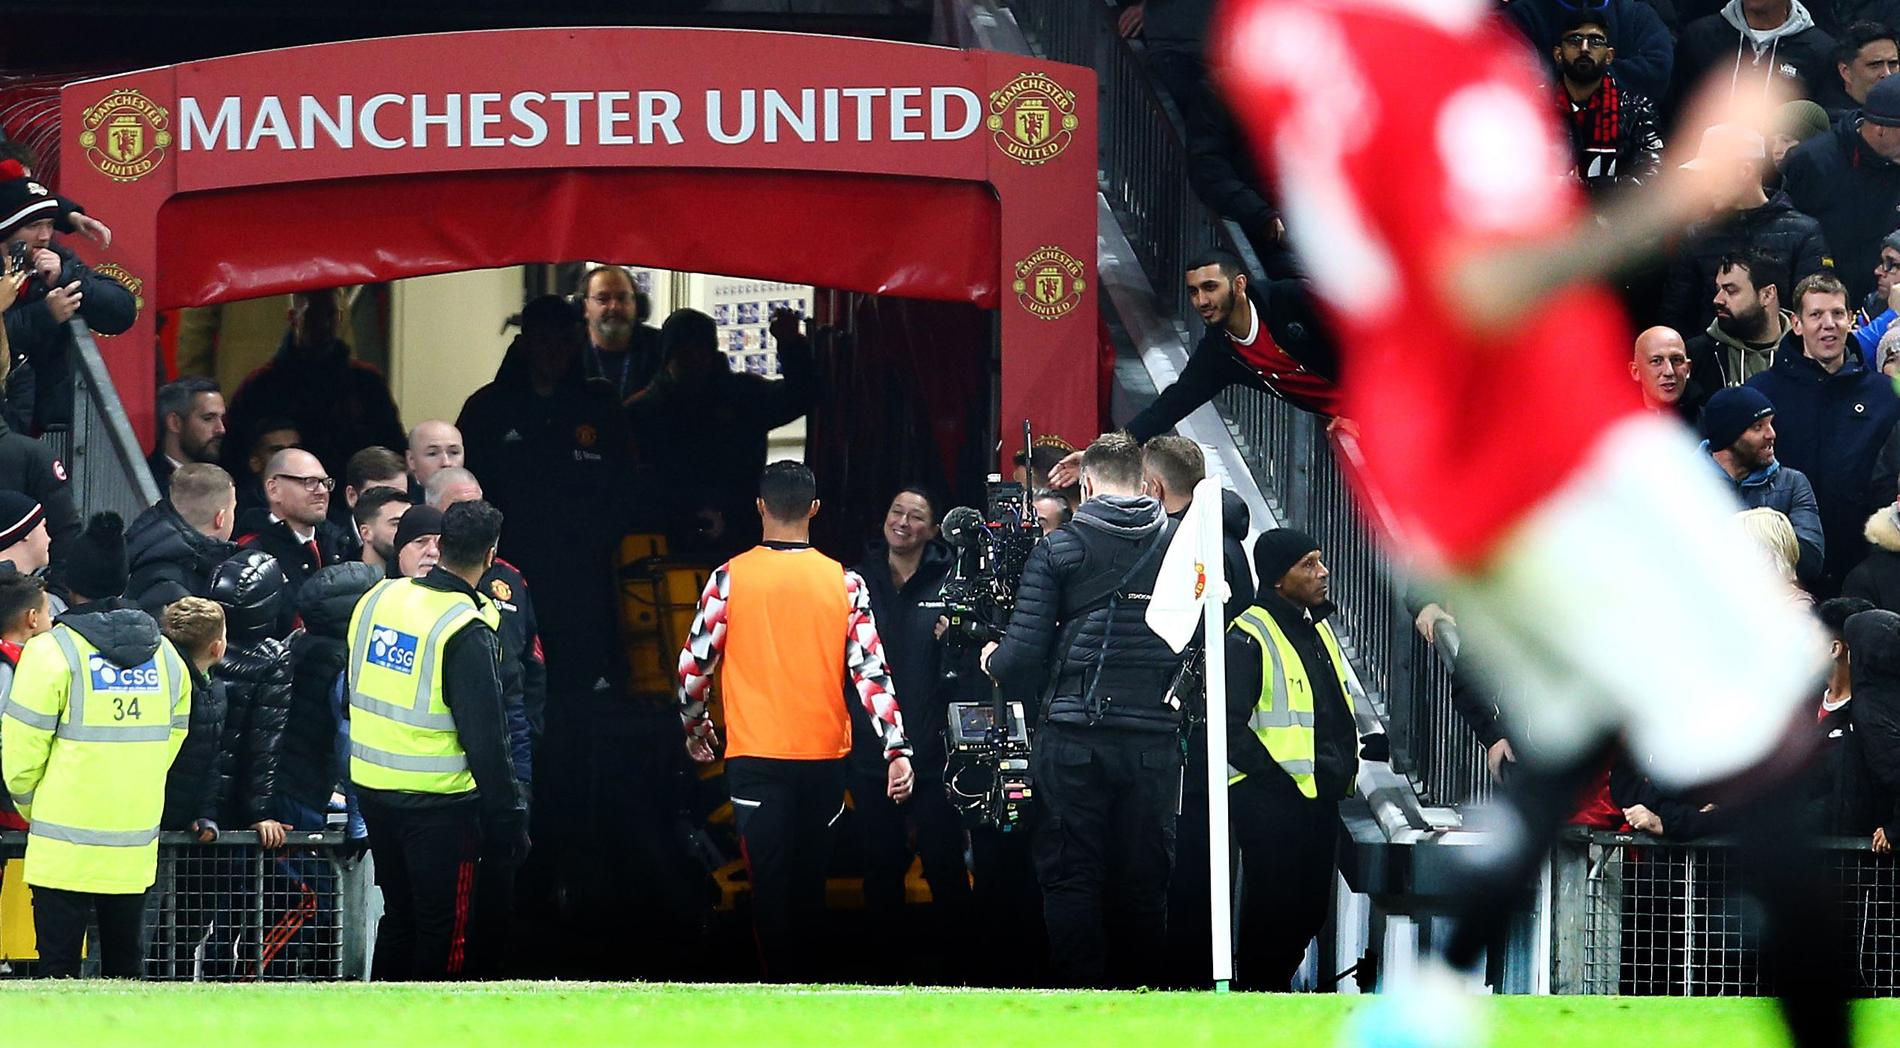 Vad som hände mellan Manchester United och Ronaldo kommer vi aldrig att får veta, säger Zlatan.